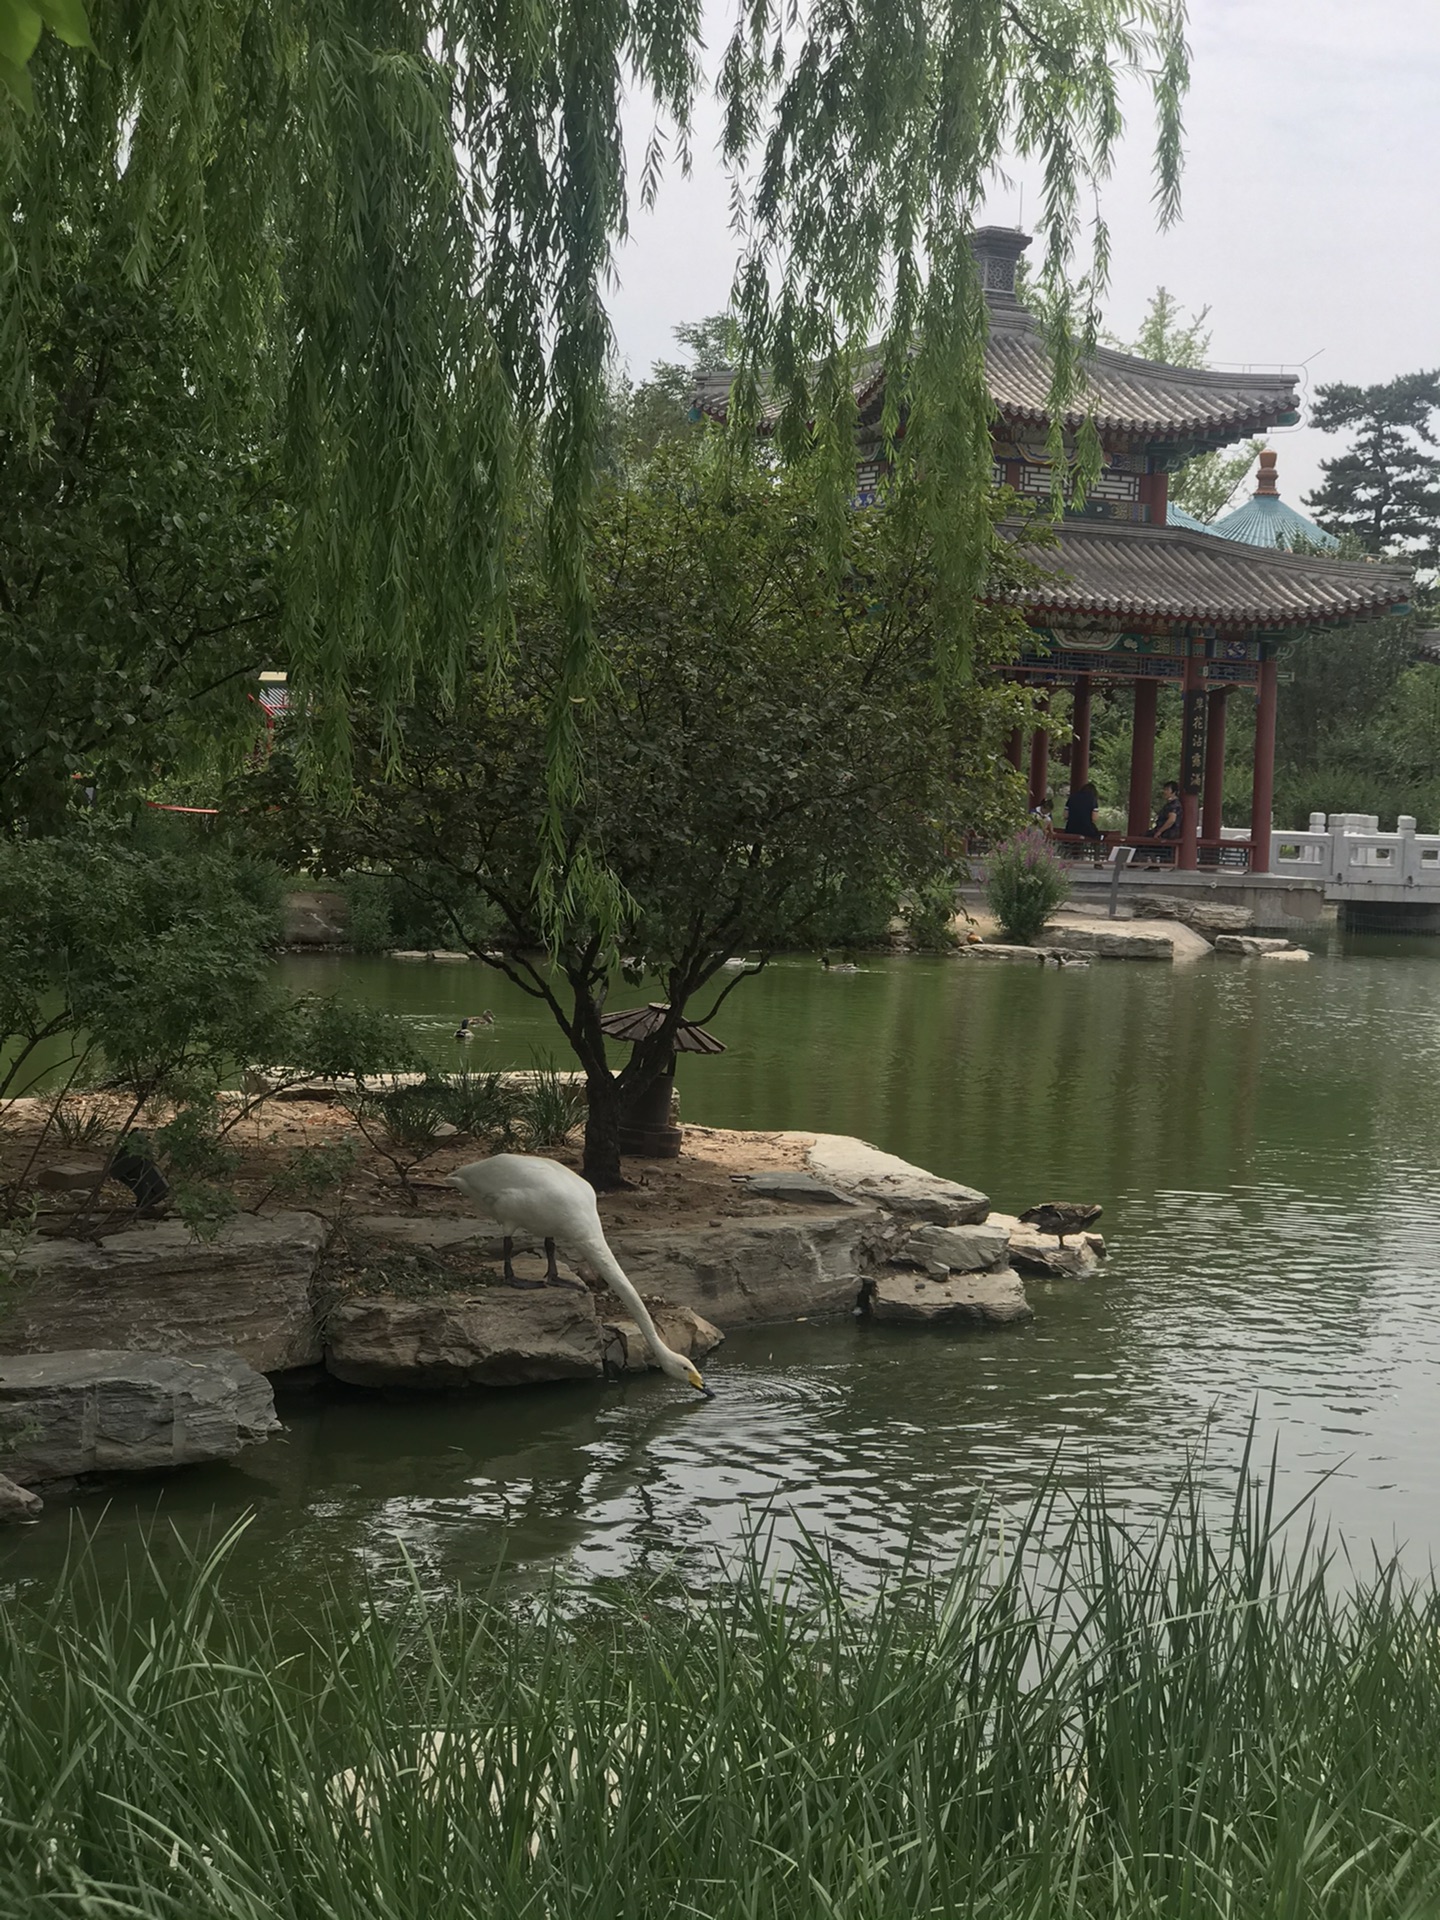 免费博物馆—中国园林博物馆